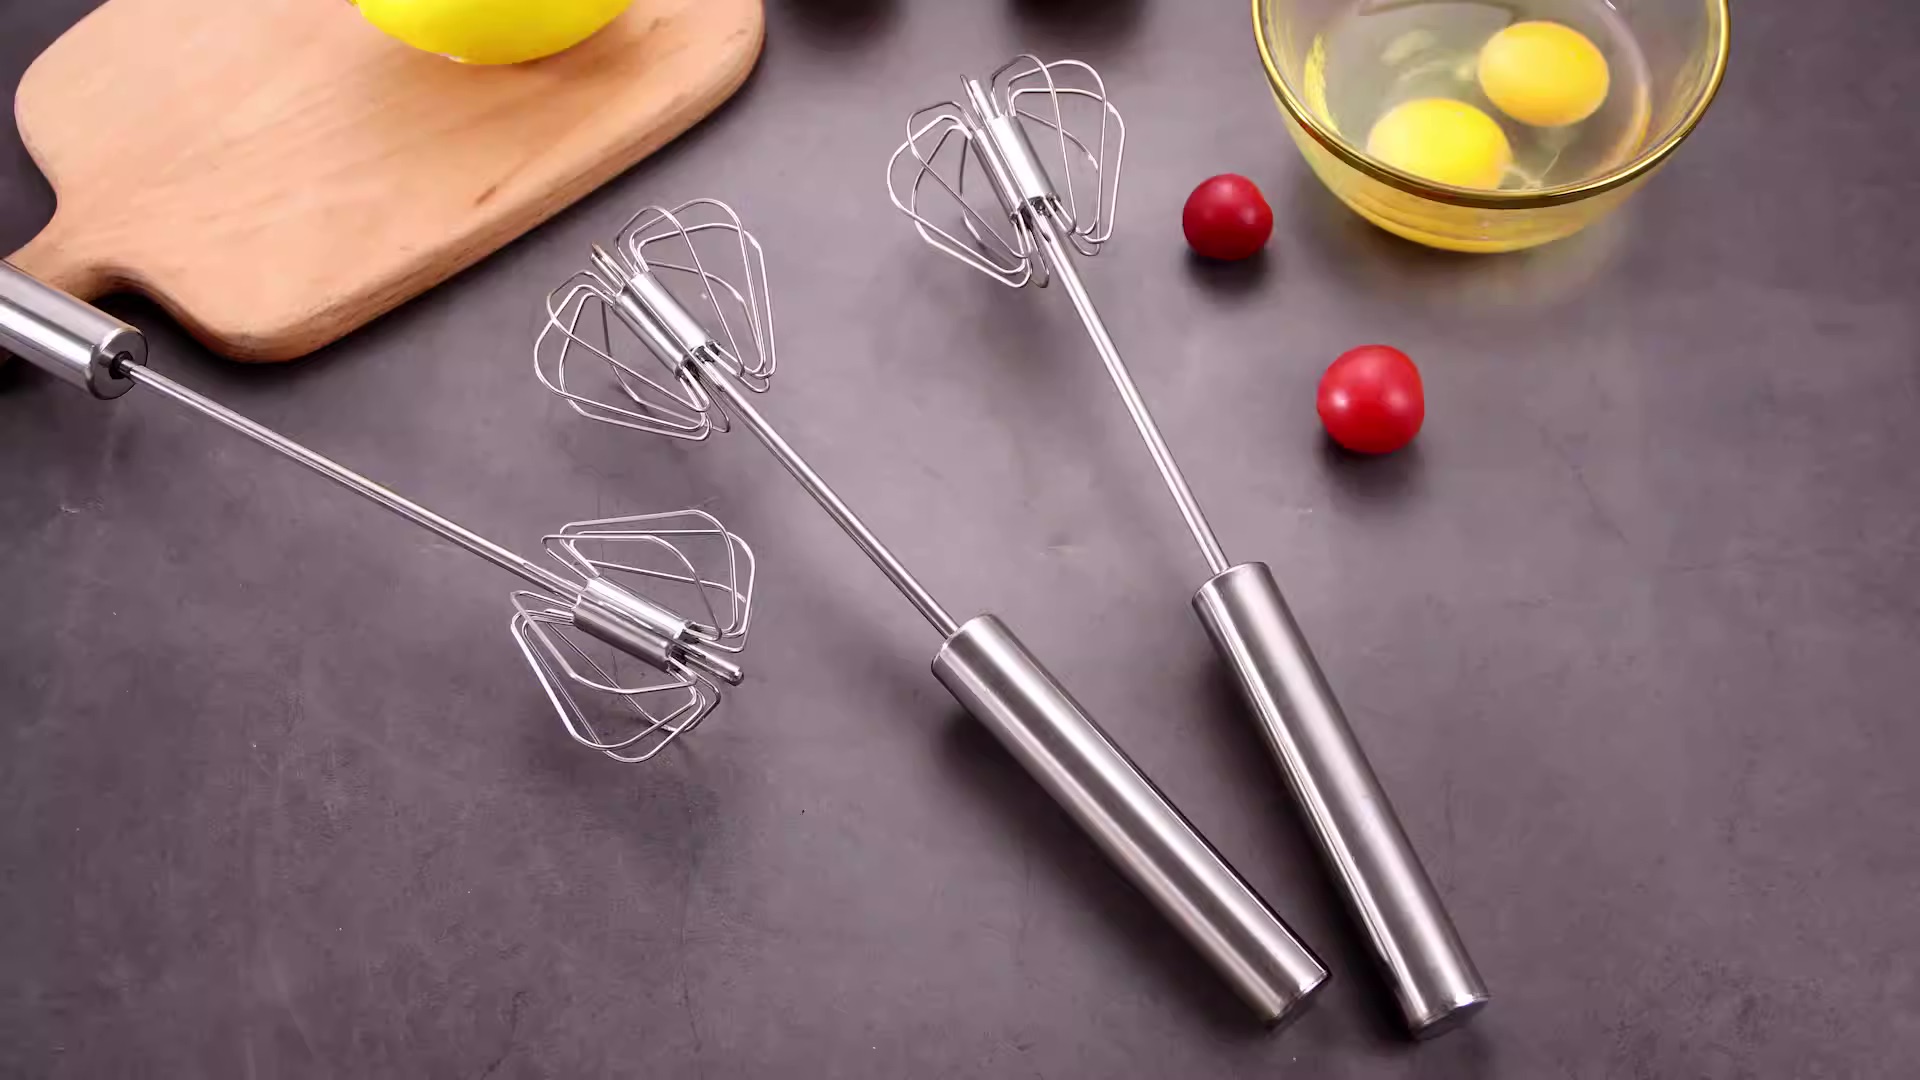 2024 Egg Whisk &separators Plastic Hand Crank Push Whisk Blender For Home -  Versatile Tool For Egg Beater